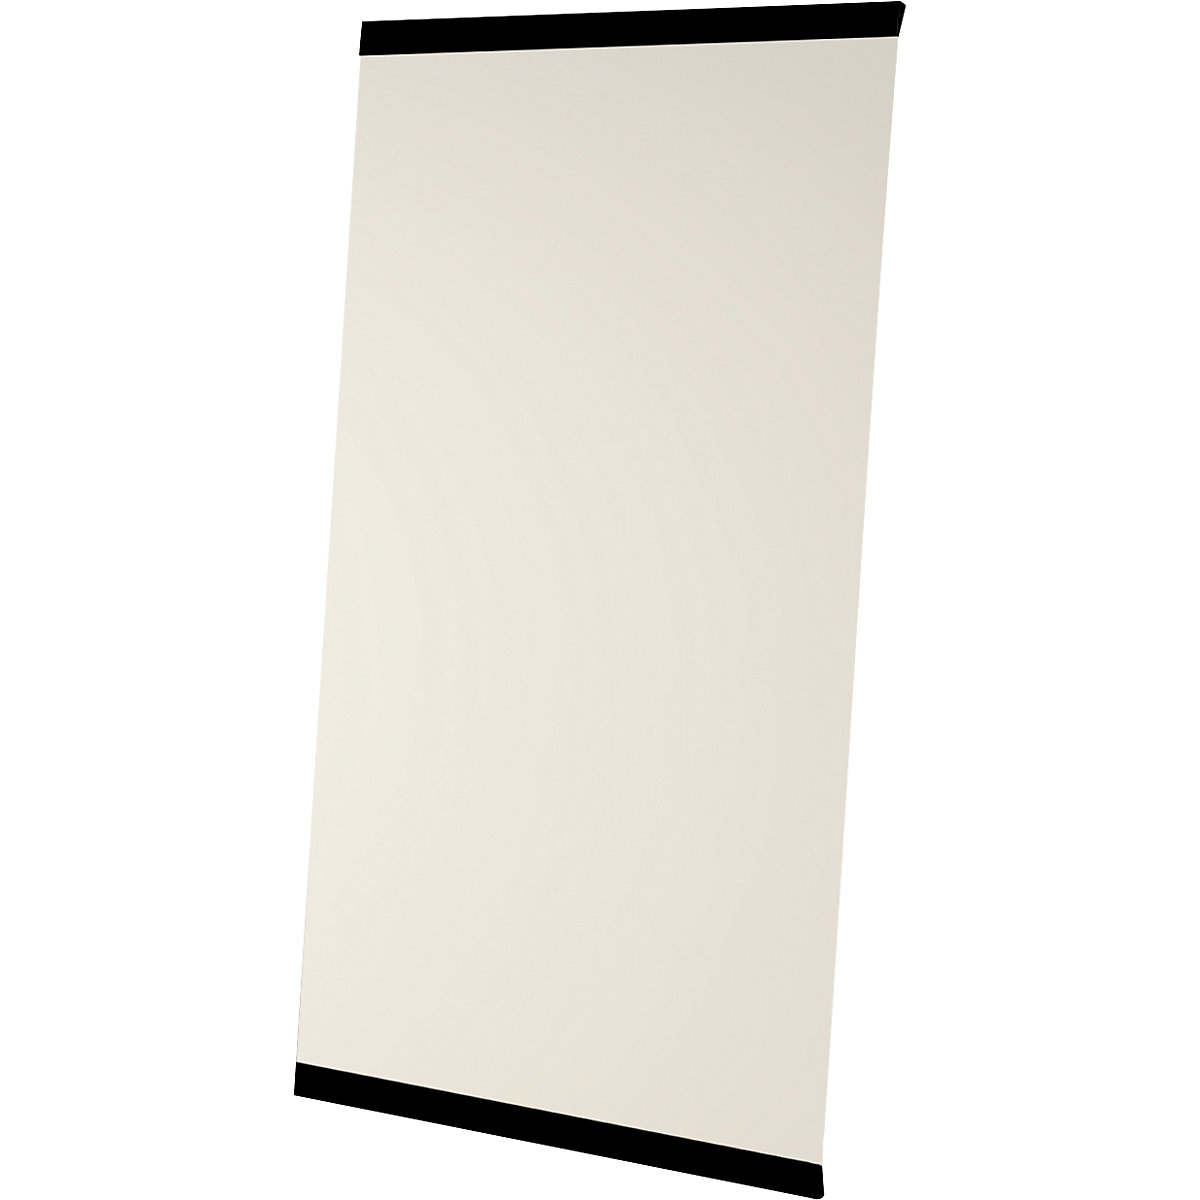 LEAN WALL whiteboard, frameless - Chameleon